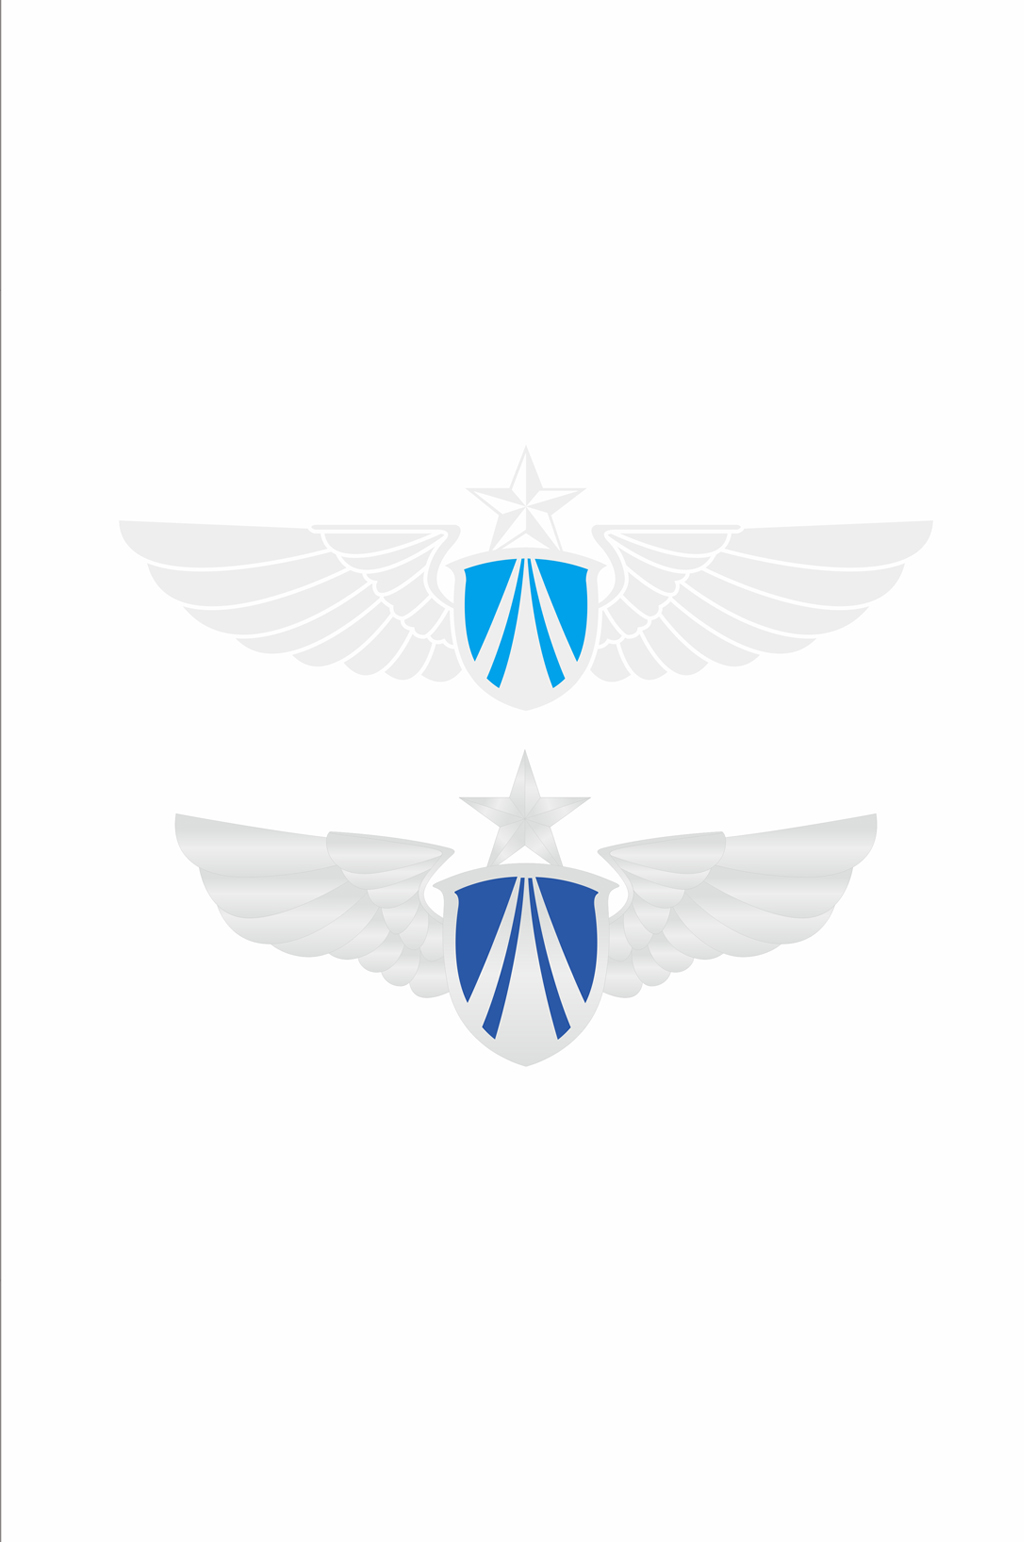 解放军空军胸标图片